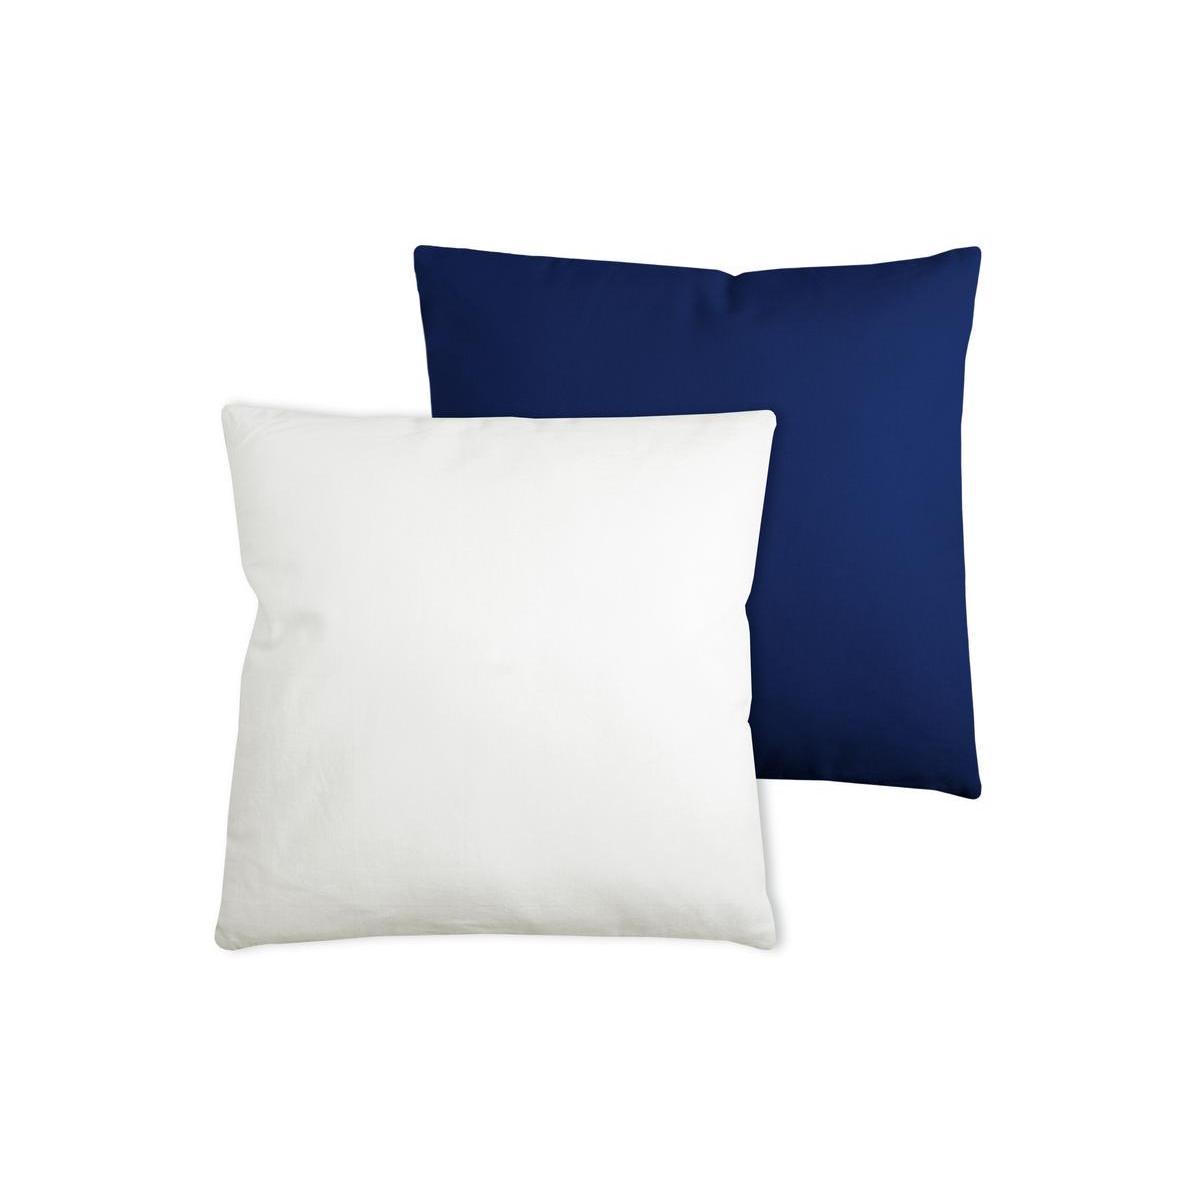 2 coussins - 100 % coton - 50 x 50 cm - Bleu et Écru